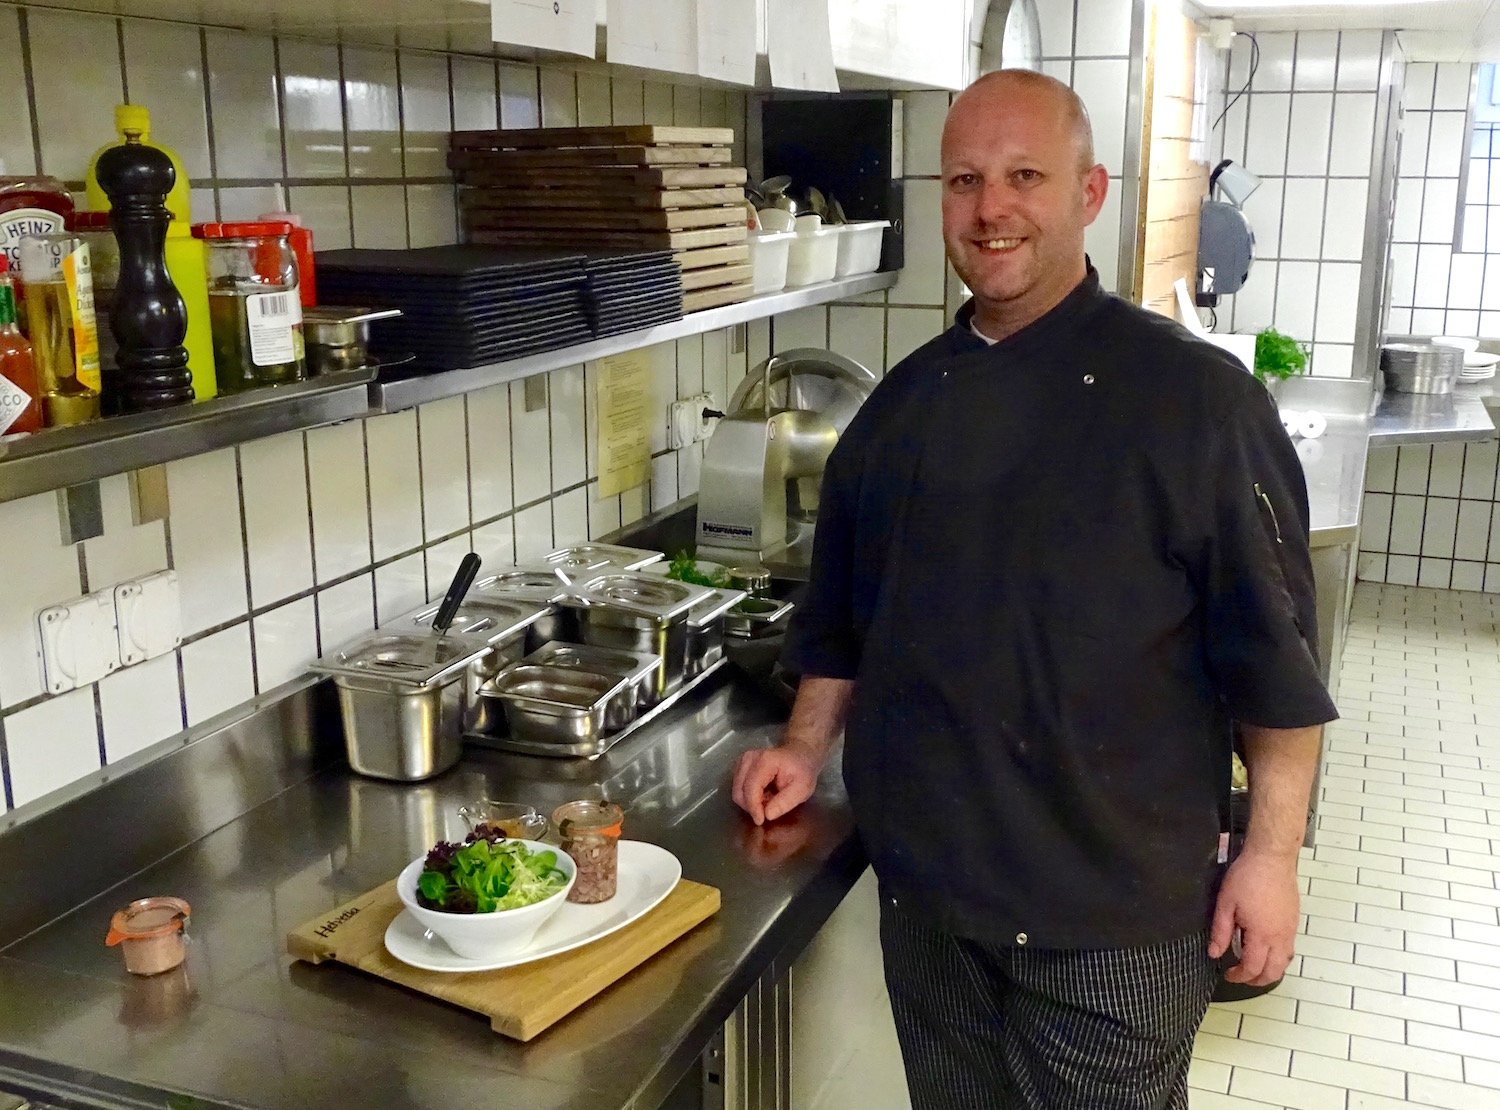 Küchenchef Daniel Marti präsentiert einen Salat mit einer Sulzterrine, die Würfel vom Kalbskopf und -zunge enthält.